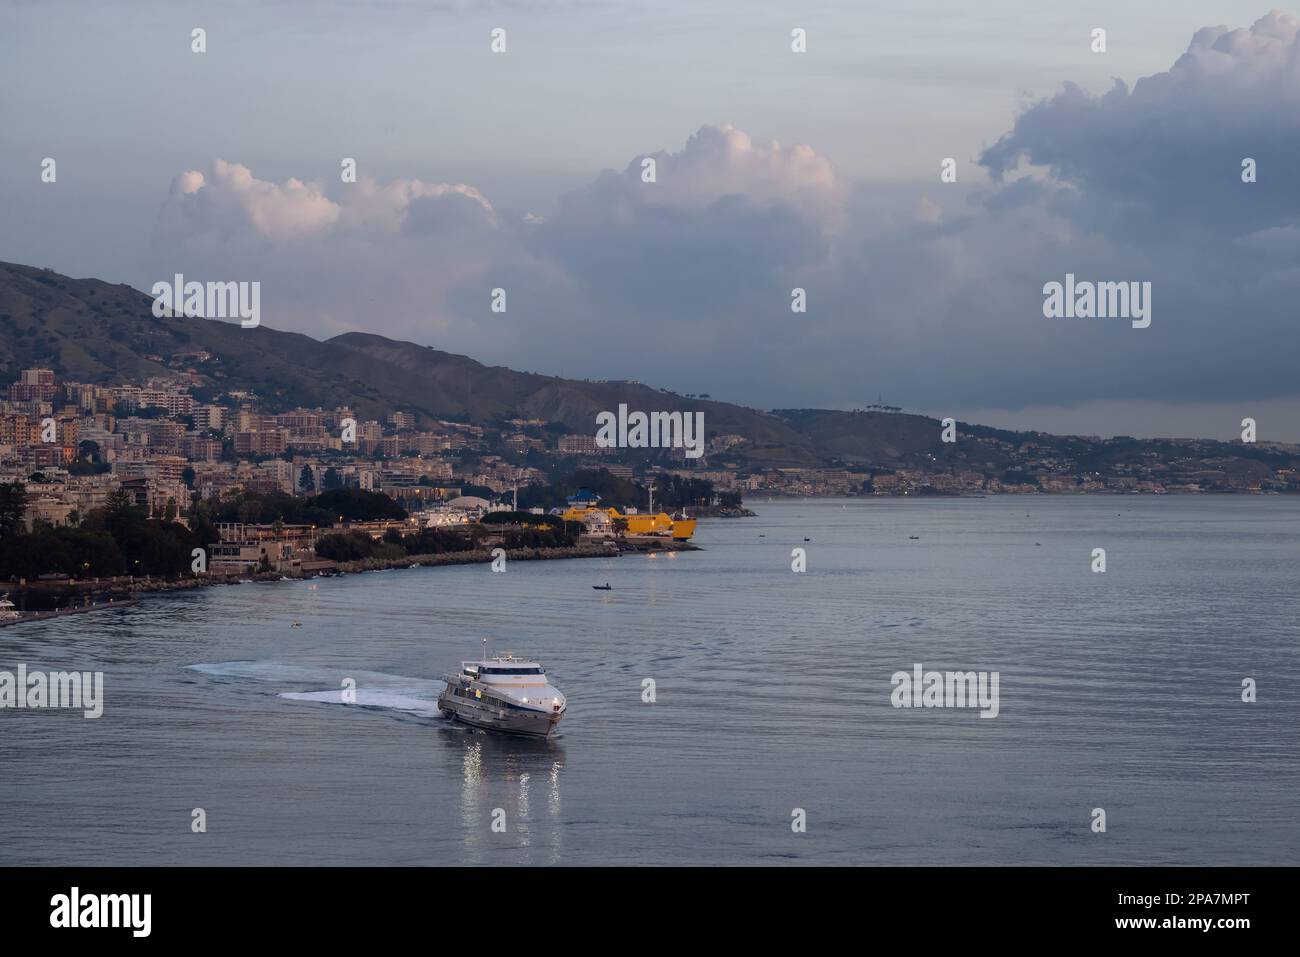 Hafen in einer touristischen Stadt Messina, Sizilien, Italien. Stockfoto